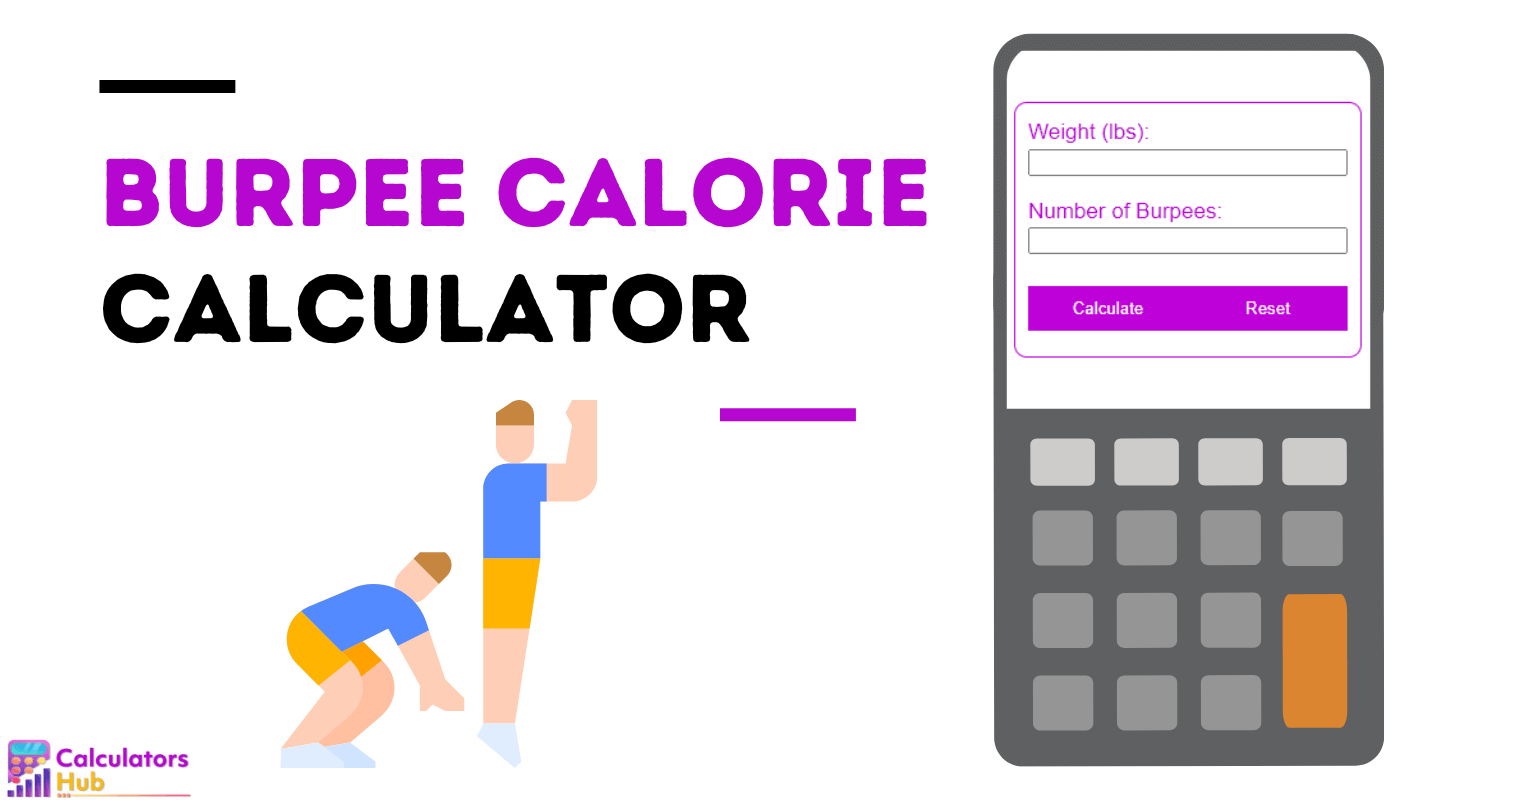 Burpee Calorie Calculator